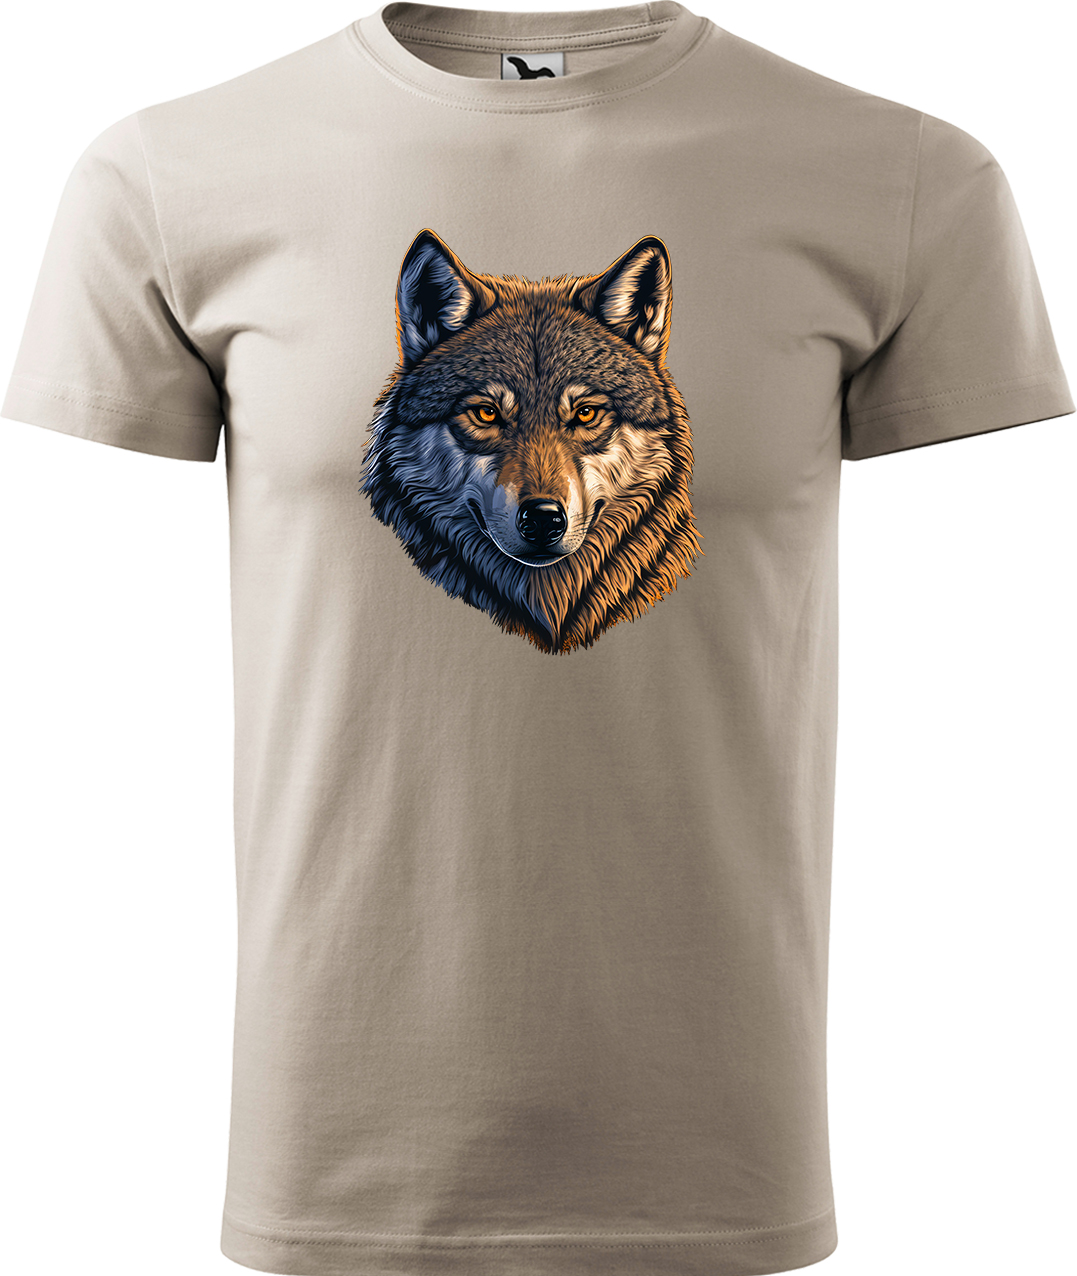 Pánské tričko s vlkem - Hlava vlka Velikost: 3XL, Barva: Béžová (51), Střih: pánský